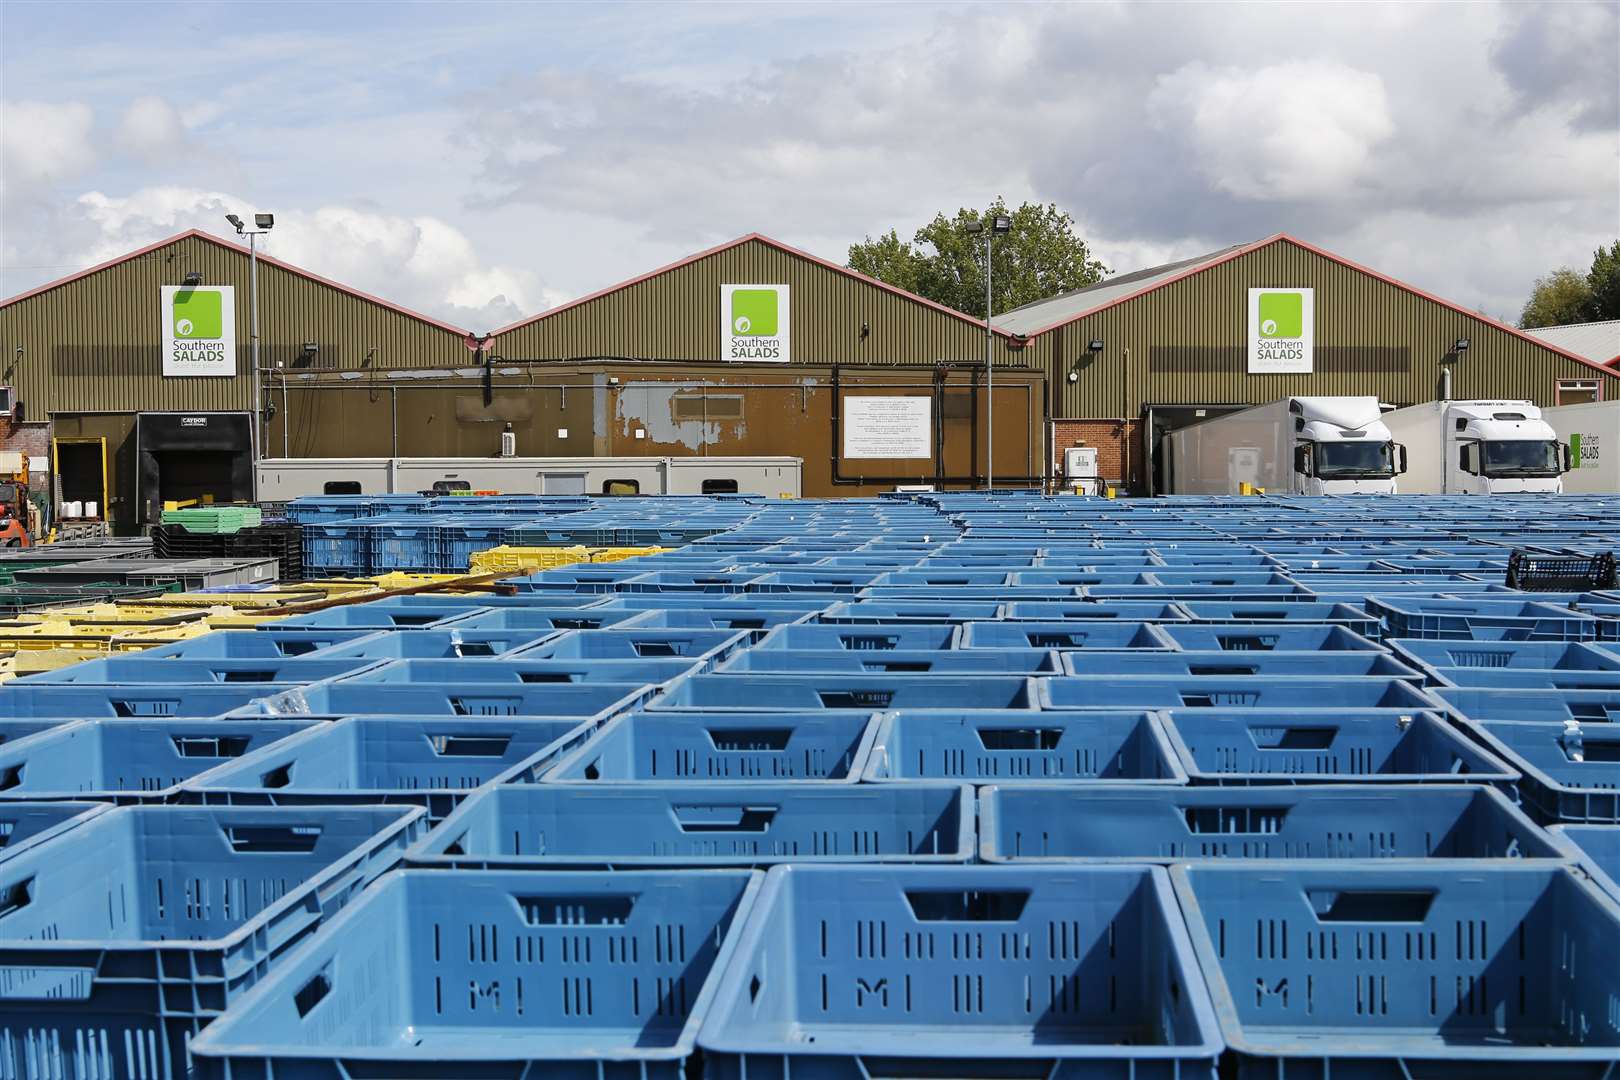 Crates lie empty across Southern Salads' premises